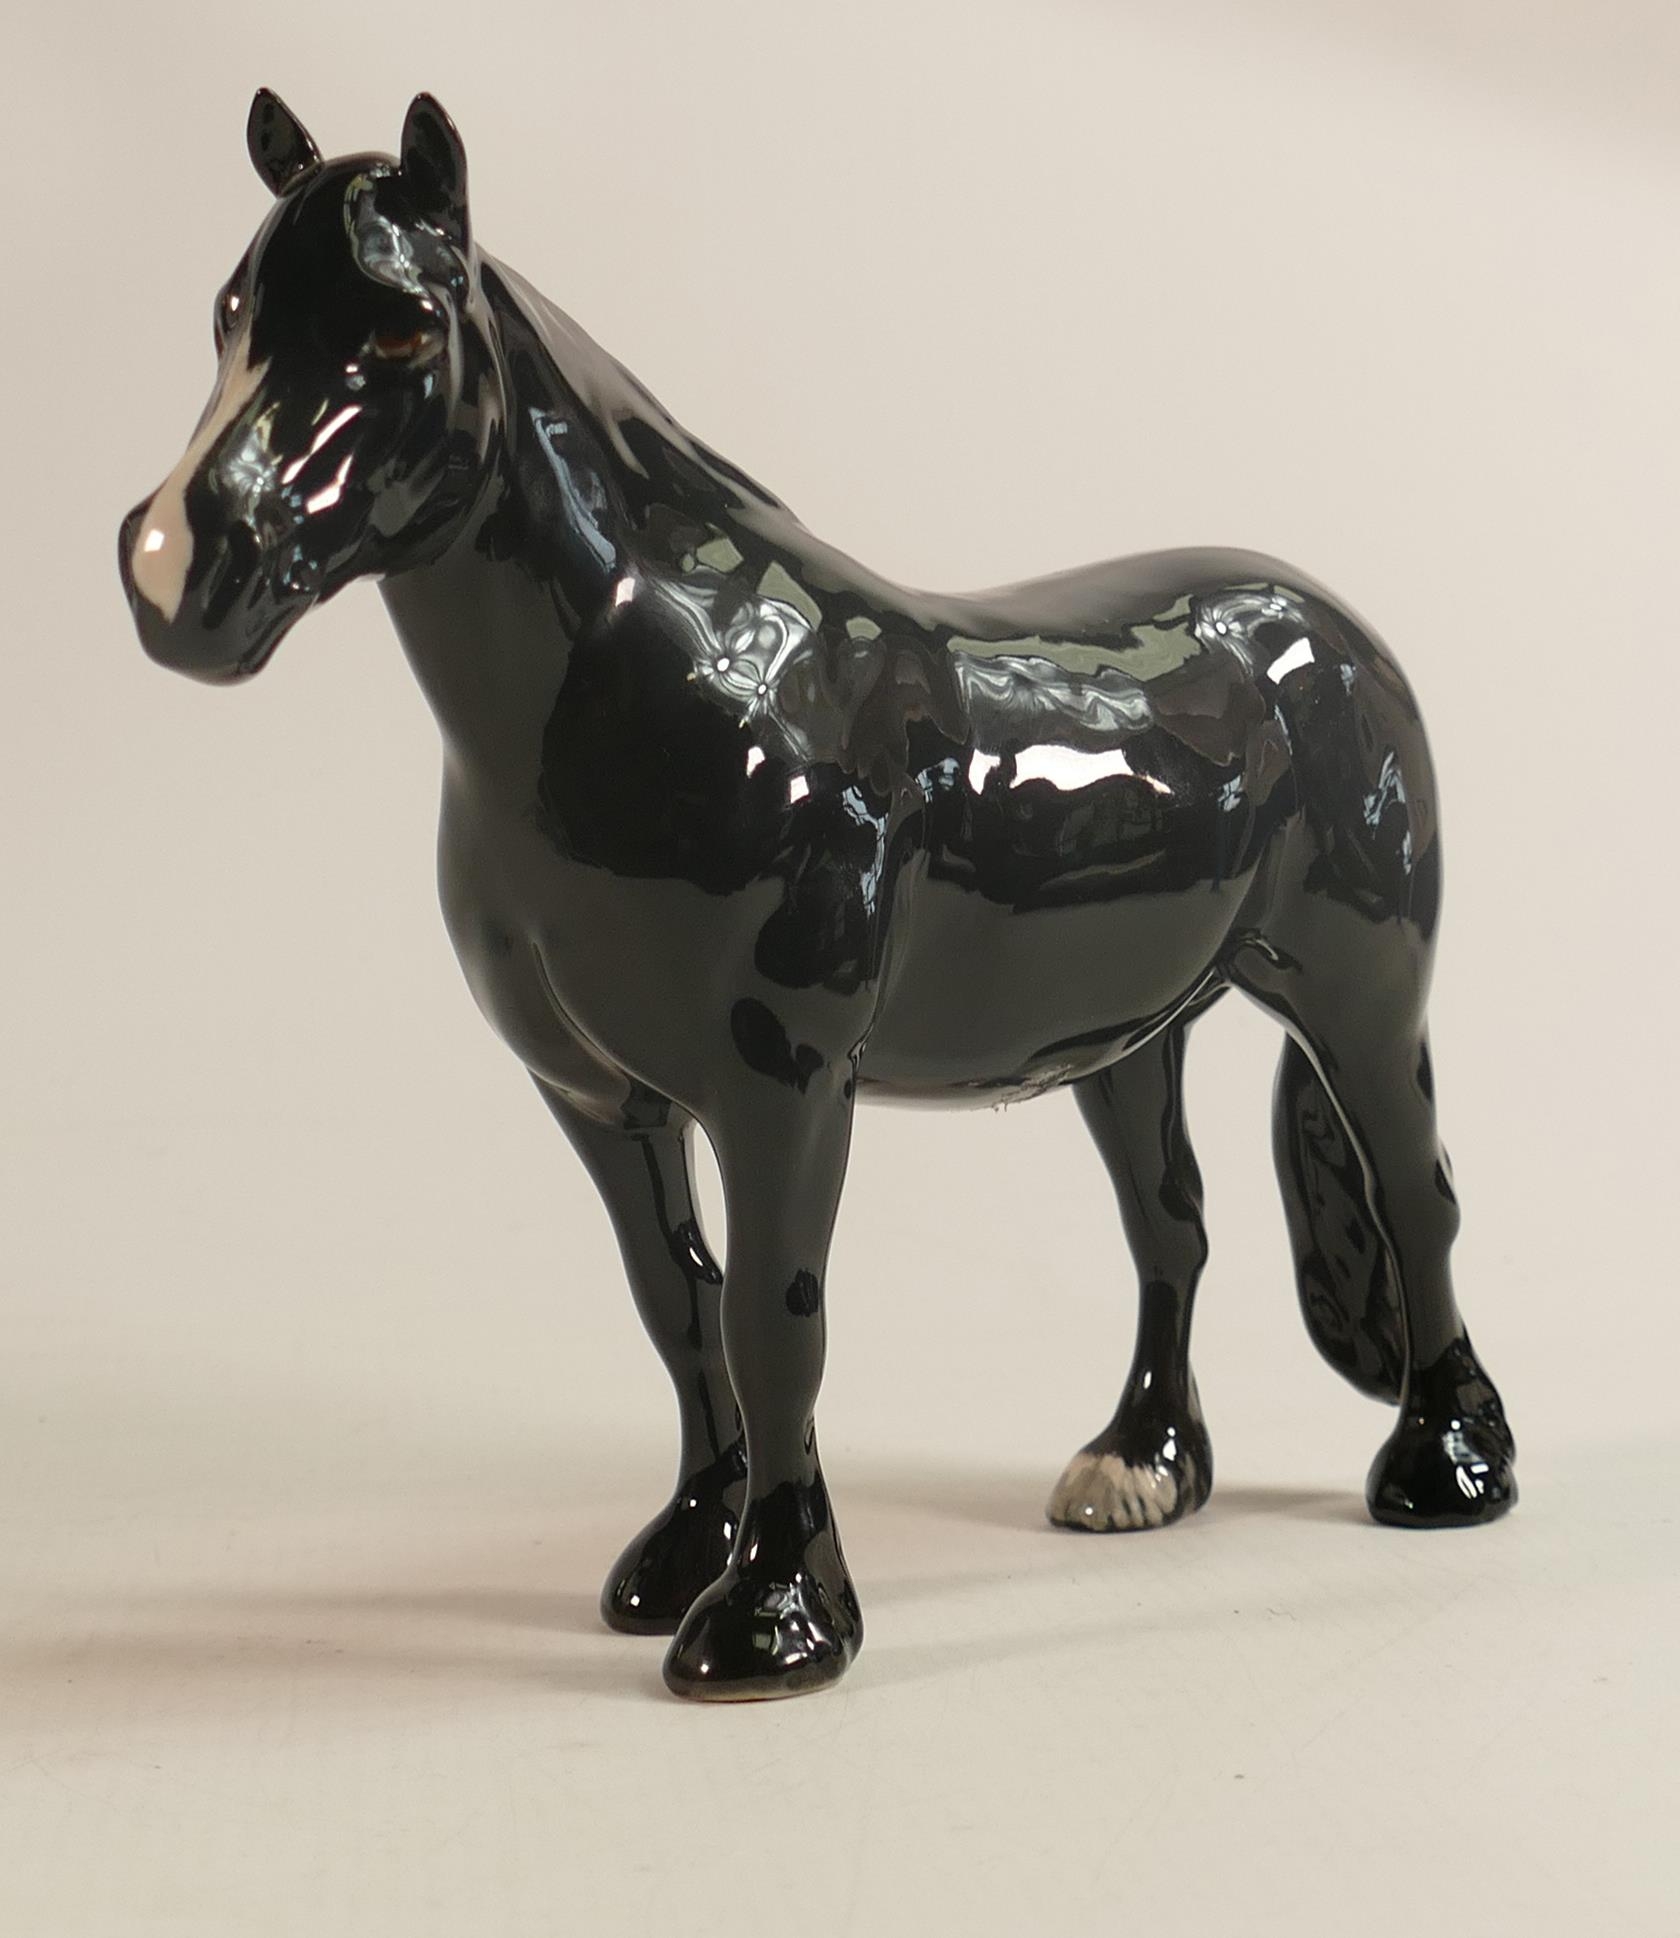 Beswick Dale pony 'Maisie' 1671